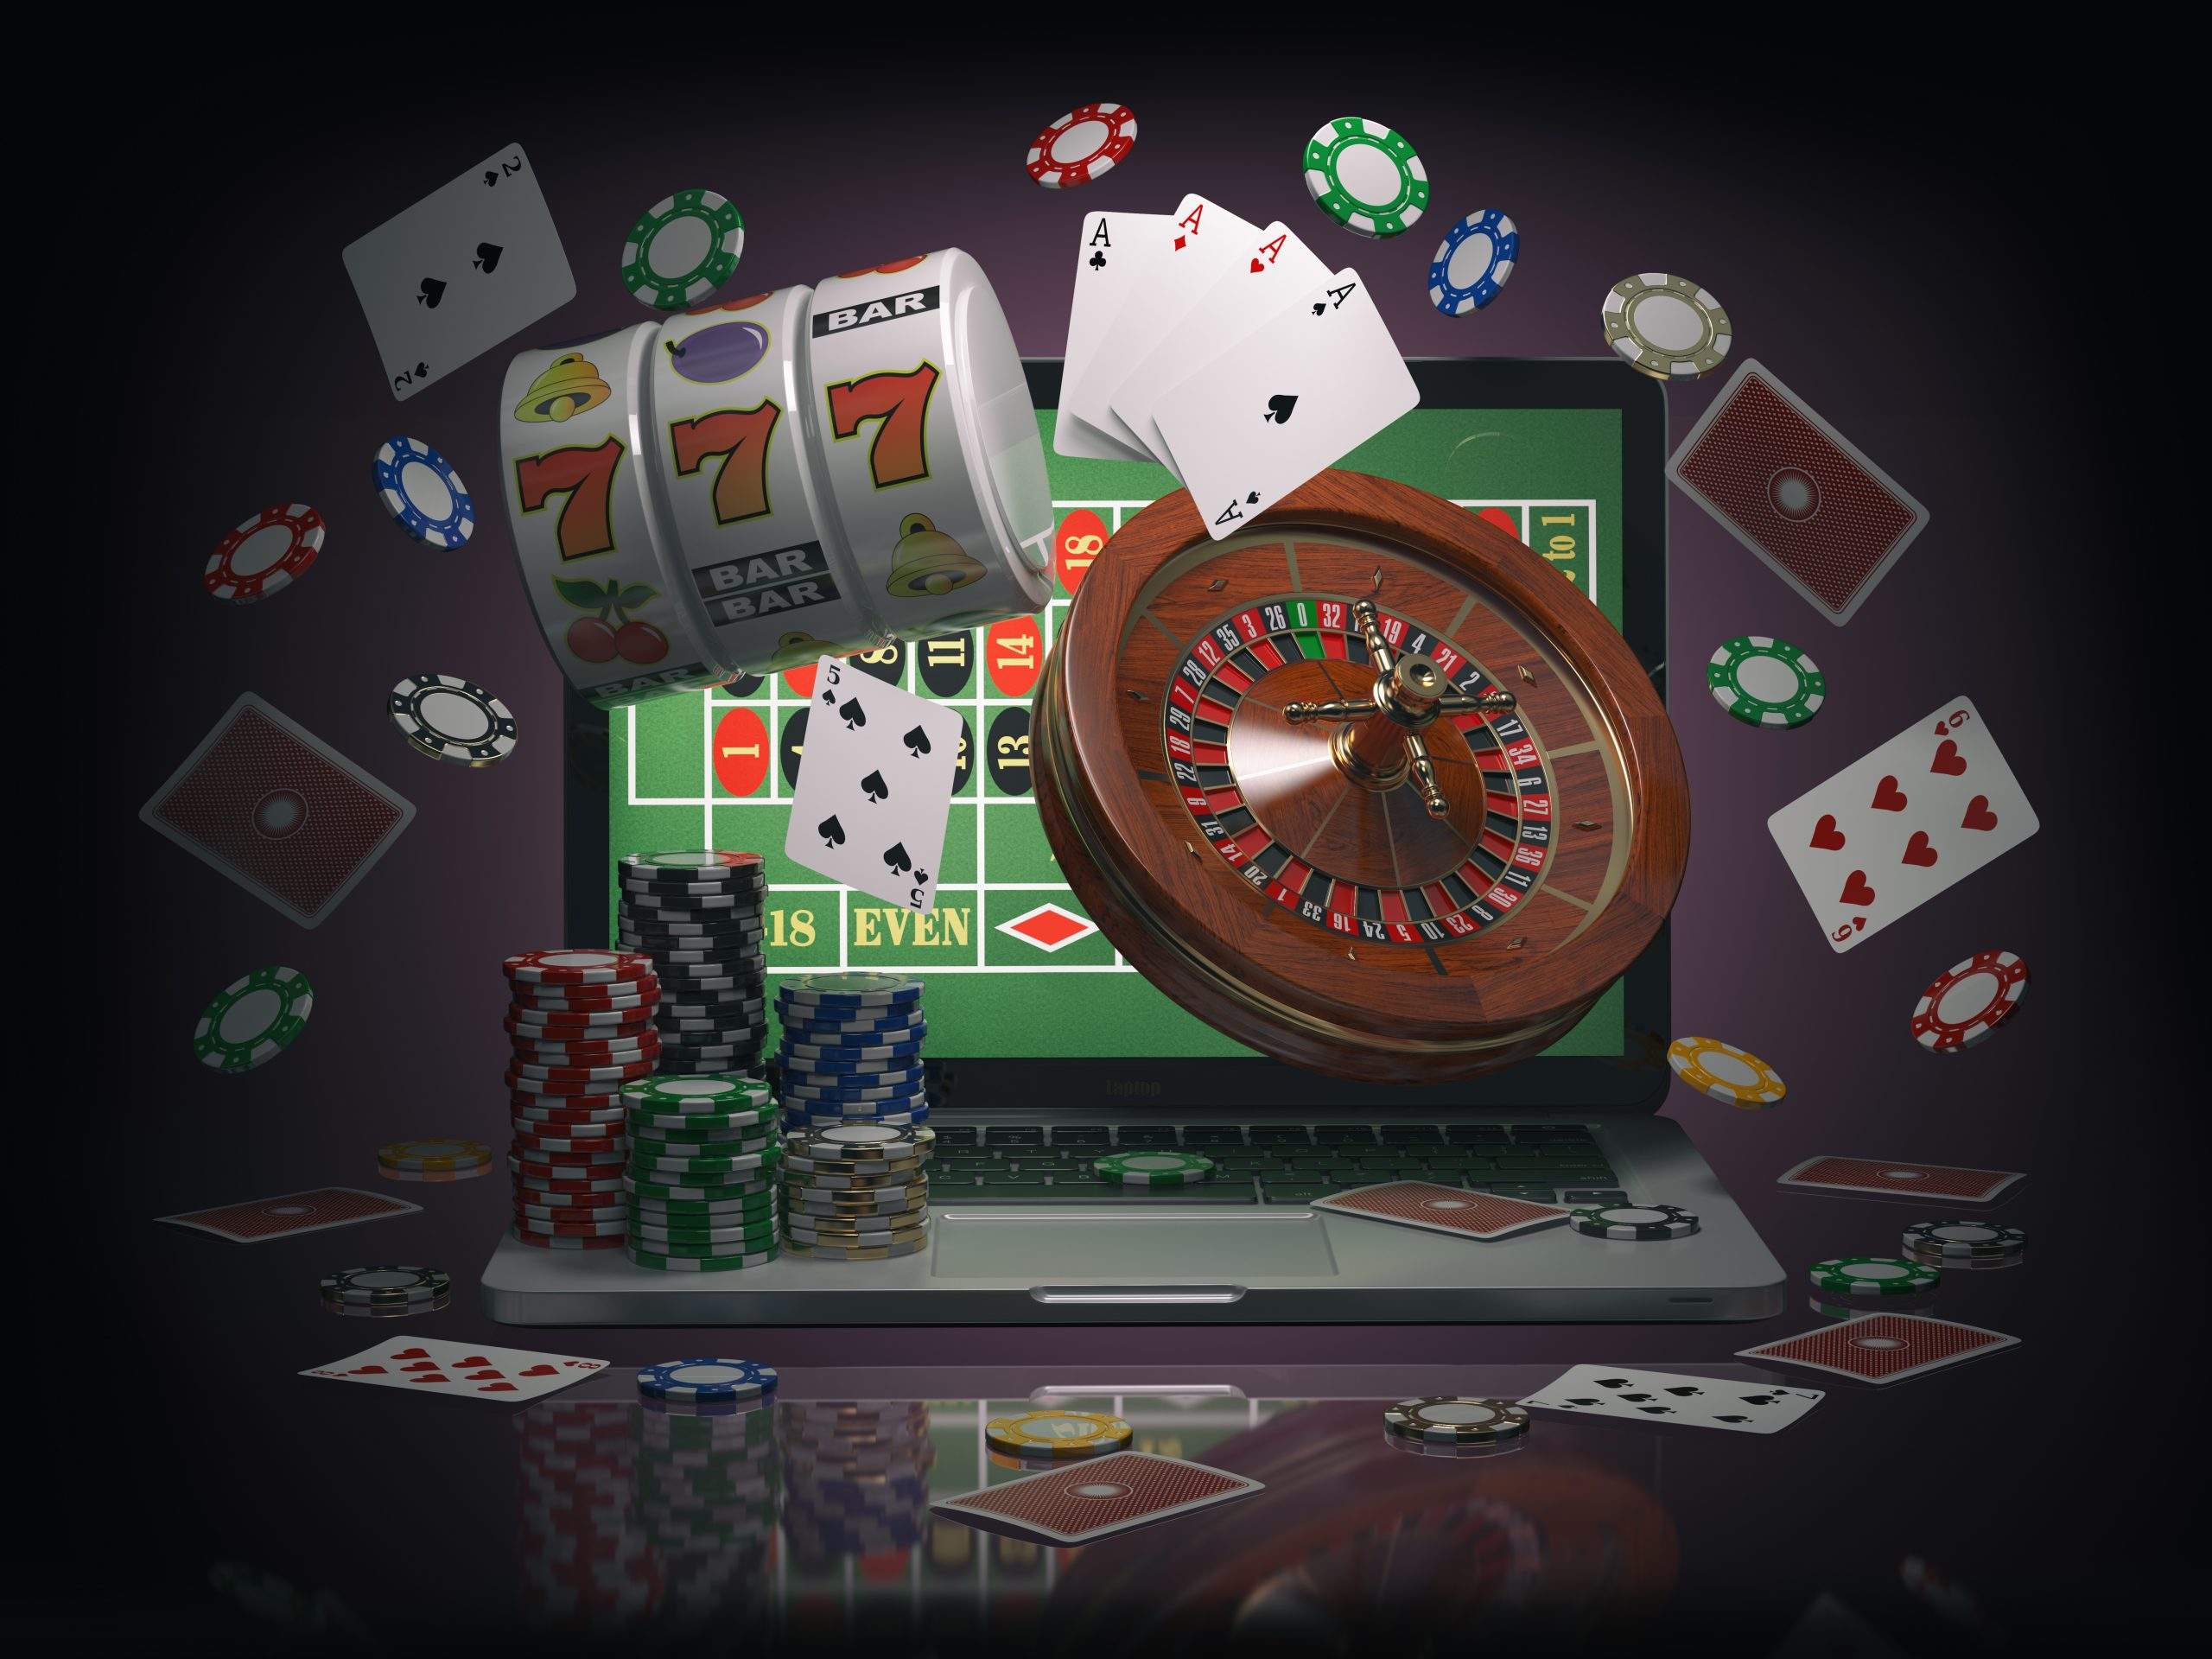 Juegos de Casino